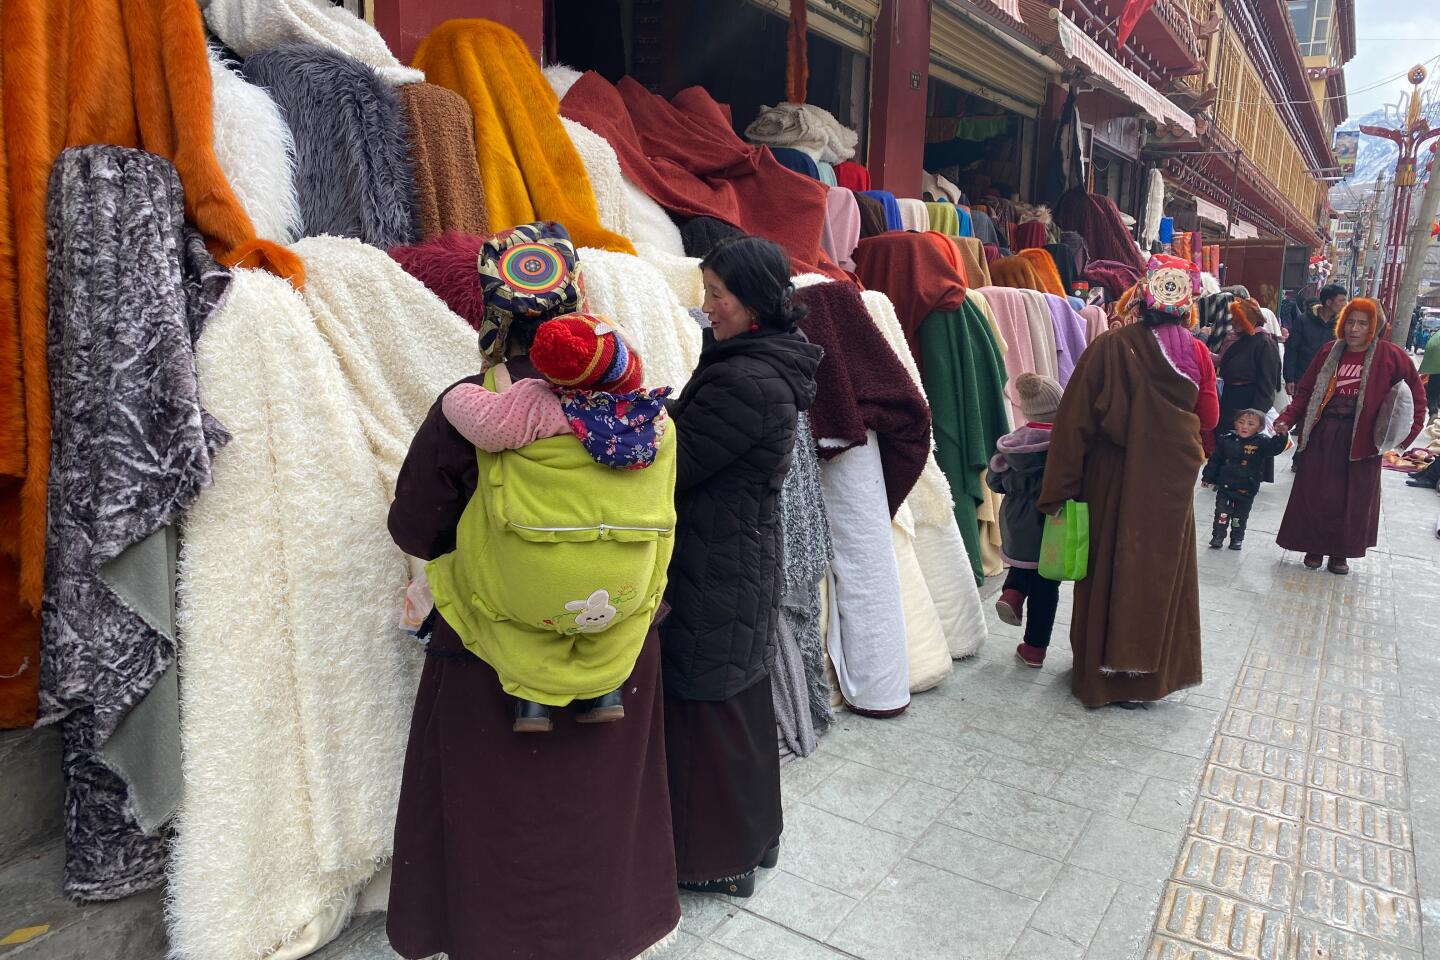 Tibetan women shop in Garze city on Jan. 19, 2020.